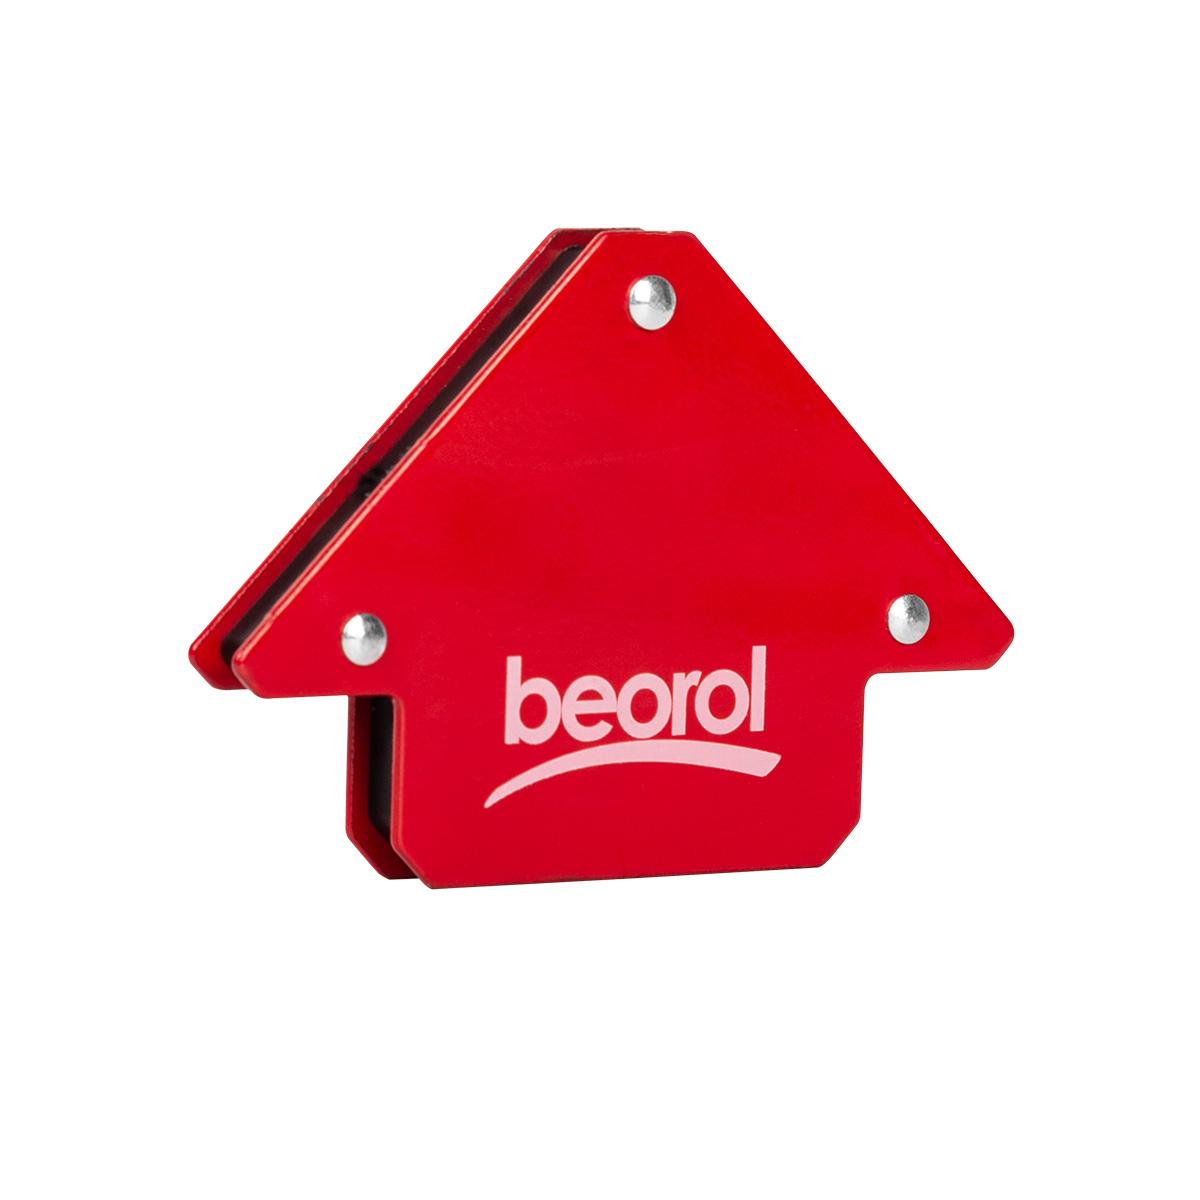 Selected image for BEOROL Magnetni držač za varioce 120x82x14mm crveni